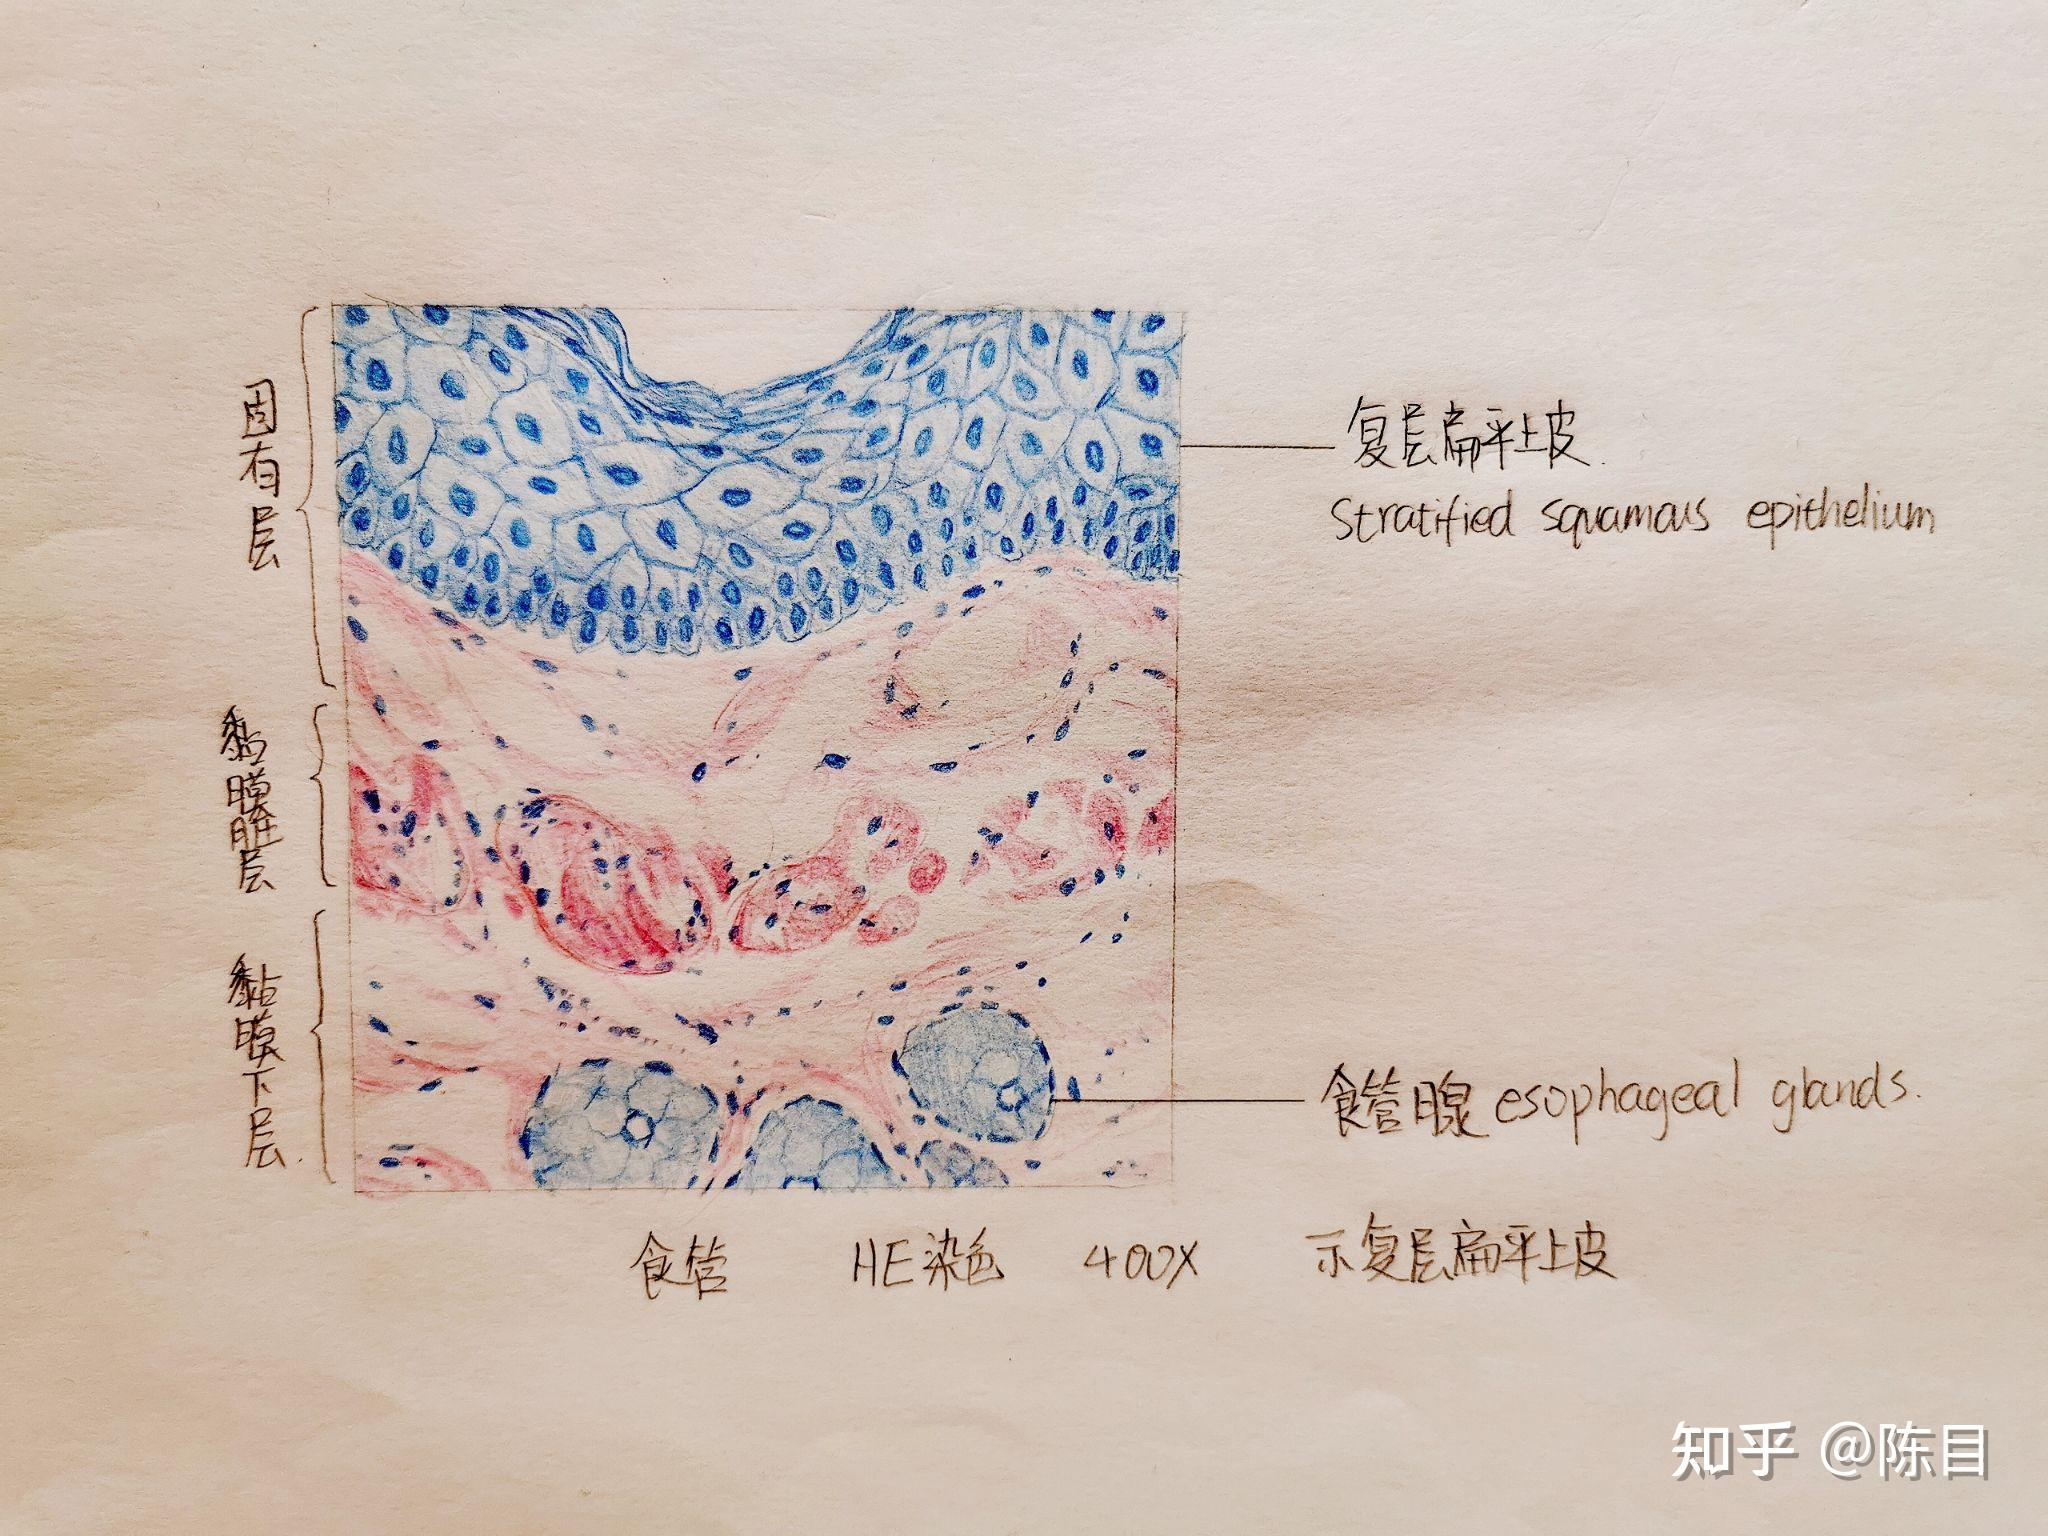 KYSE-410 Cell:人食管鳞癌细胞系价格 厂家：上海宾穗生物科技有限公司